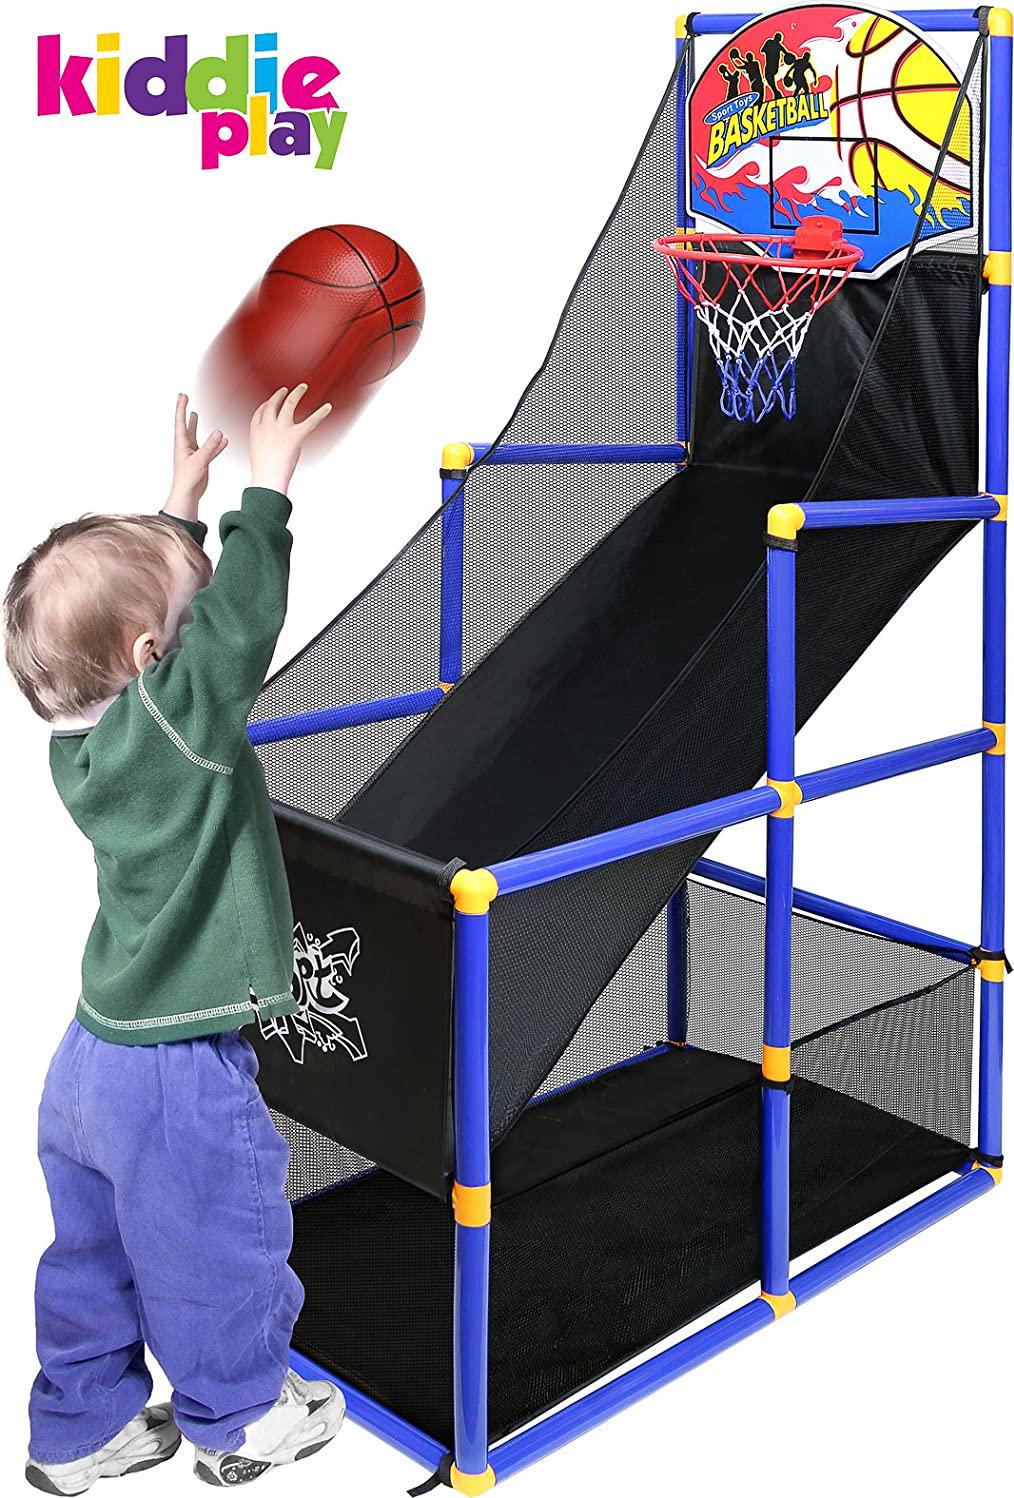 Kiddie Play, Kiddie Play Basketball Arcade Game for Kids